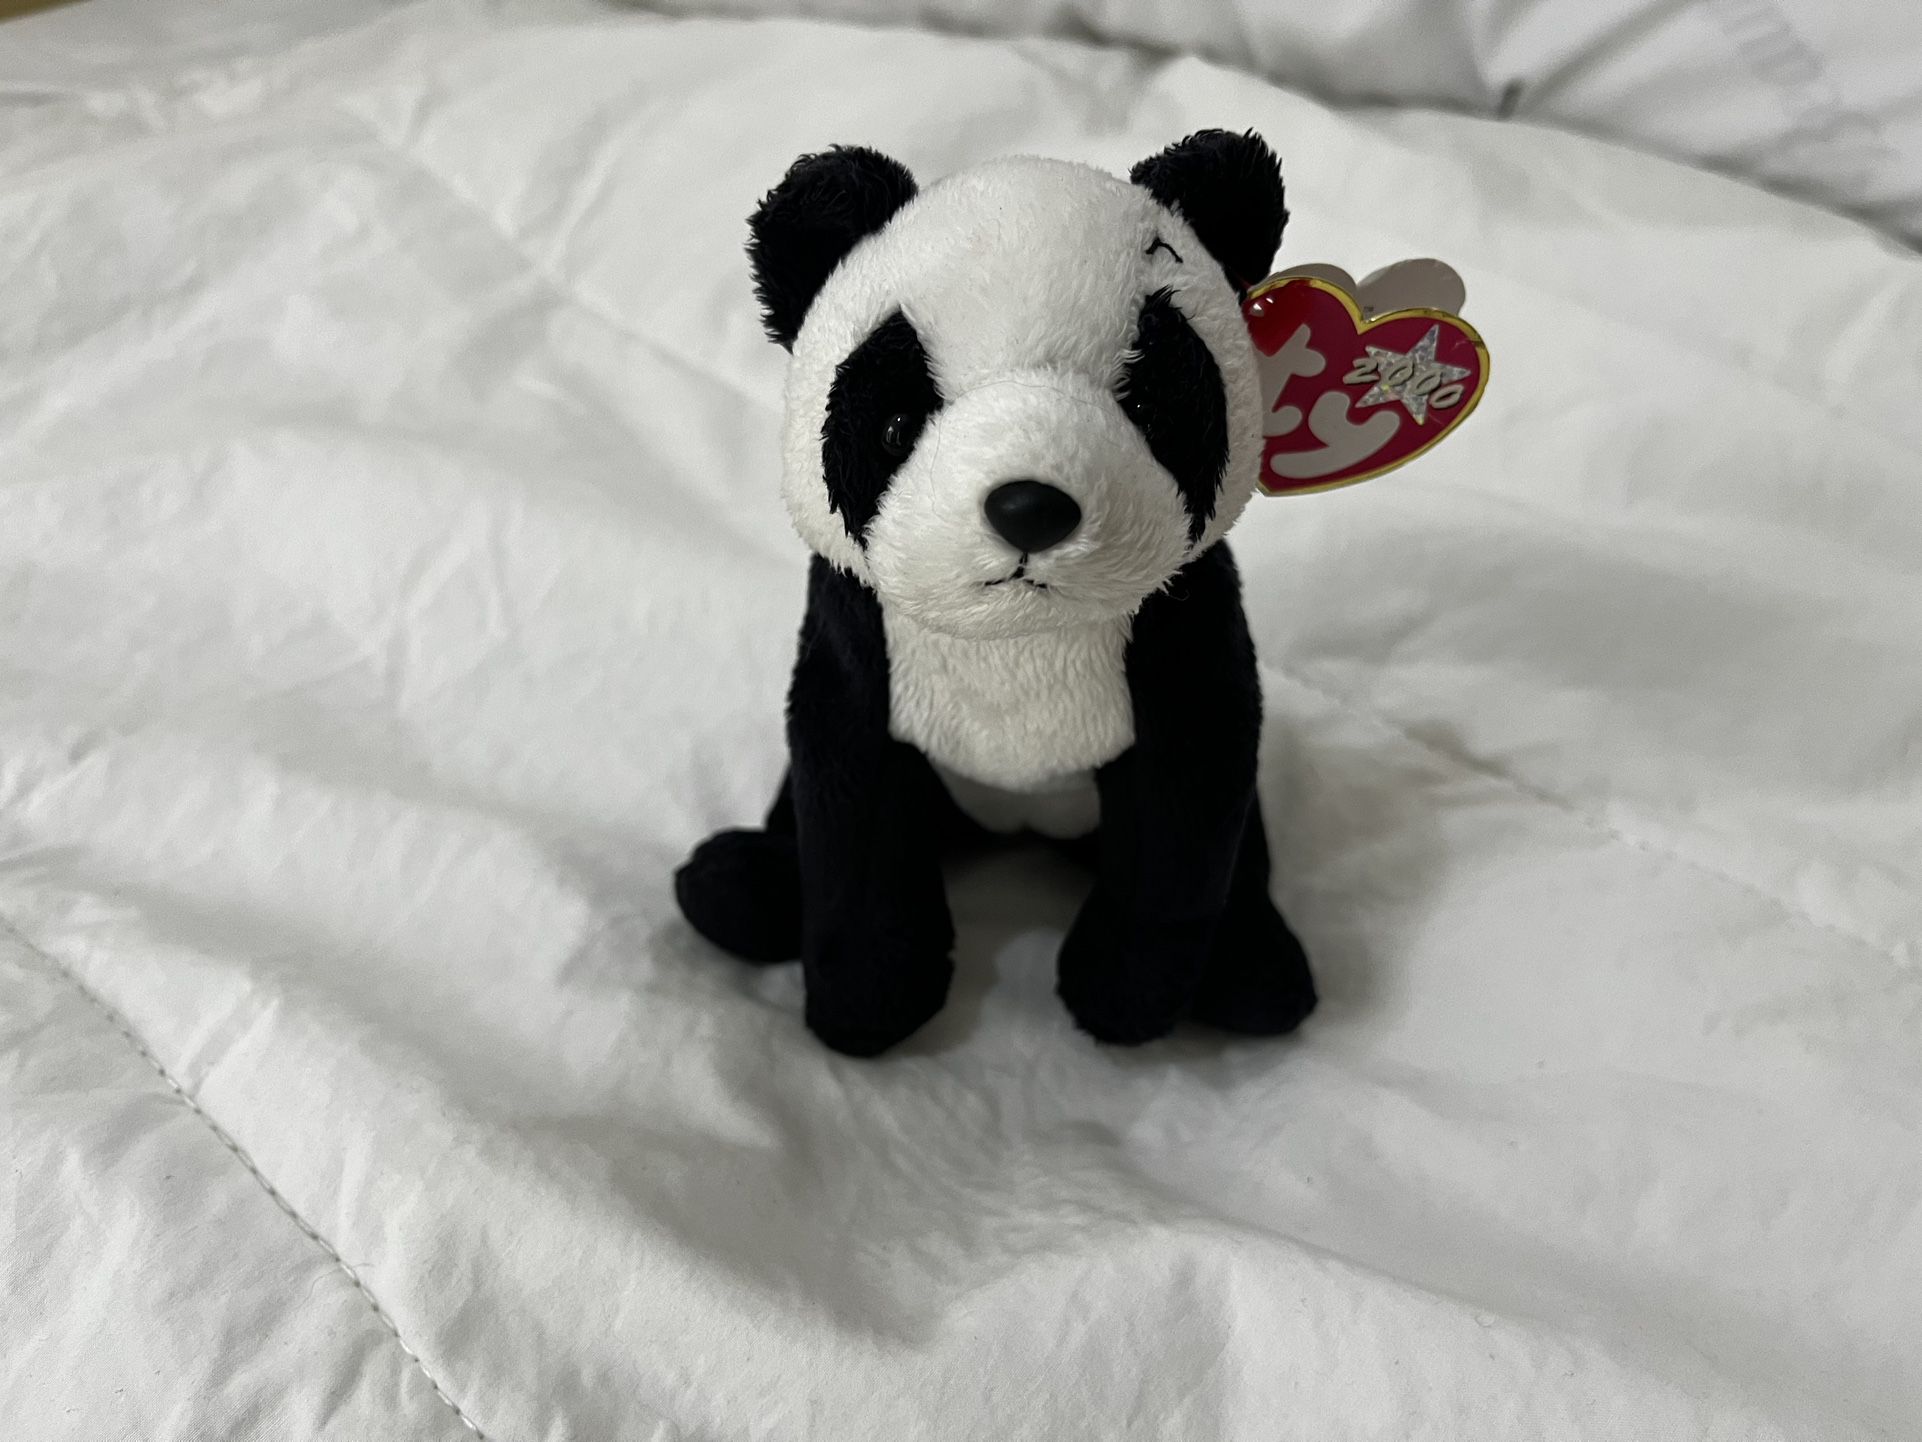 China the Panda Beanie Baby